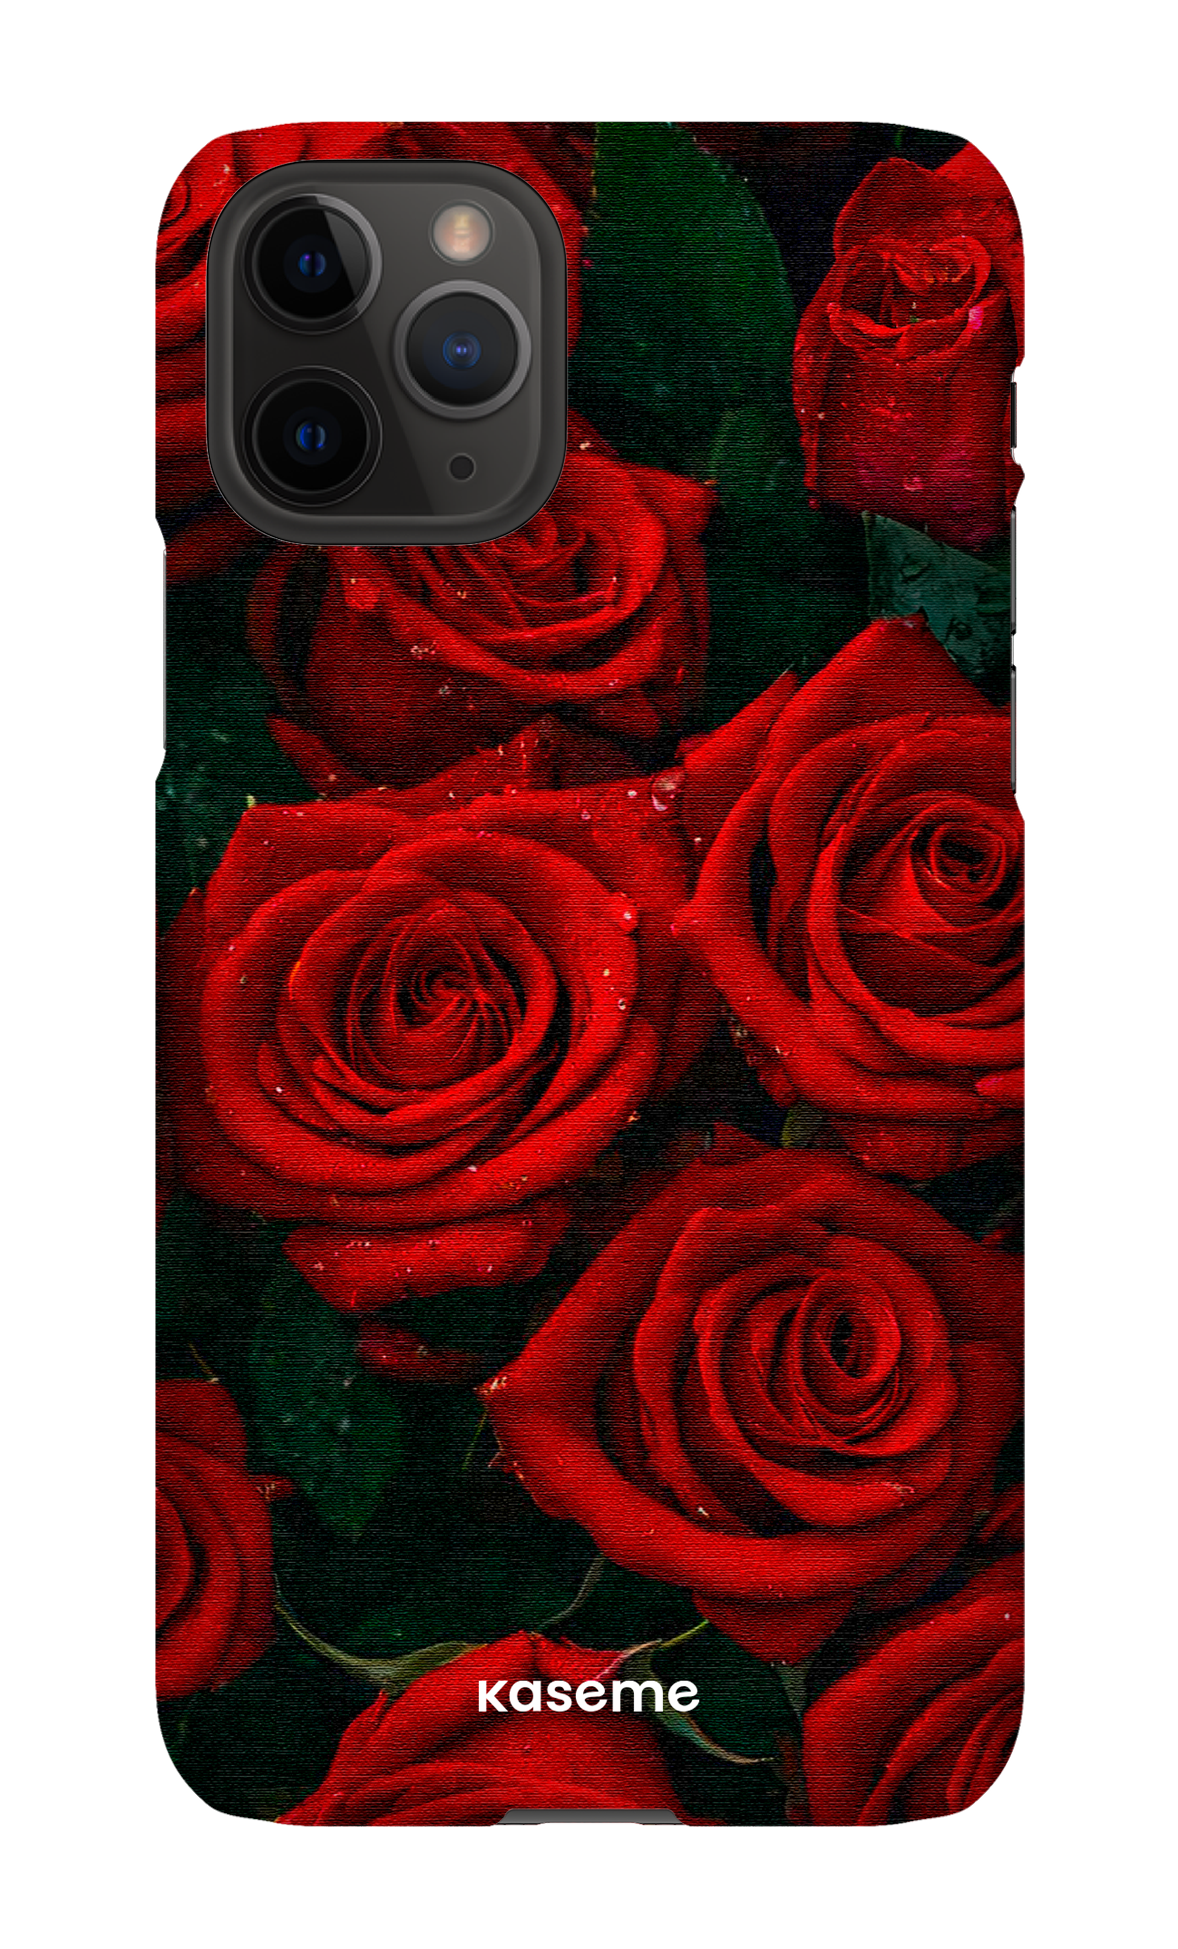 Romance - iPhone 11 Pro